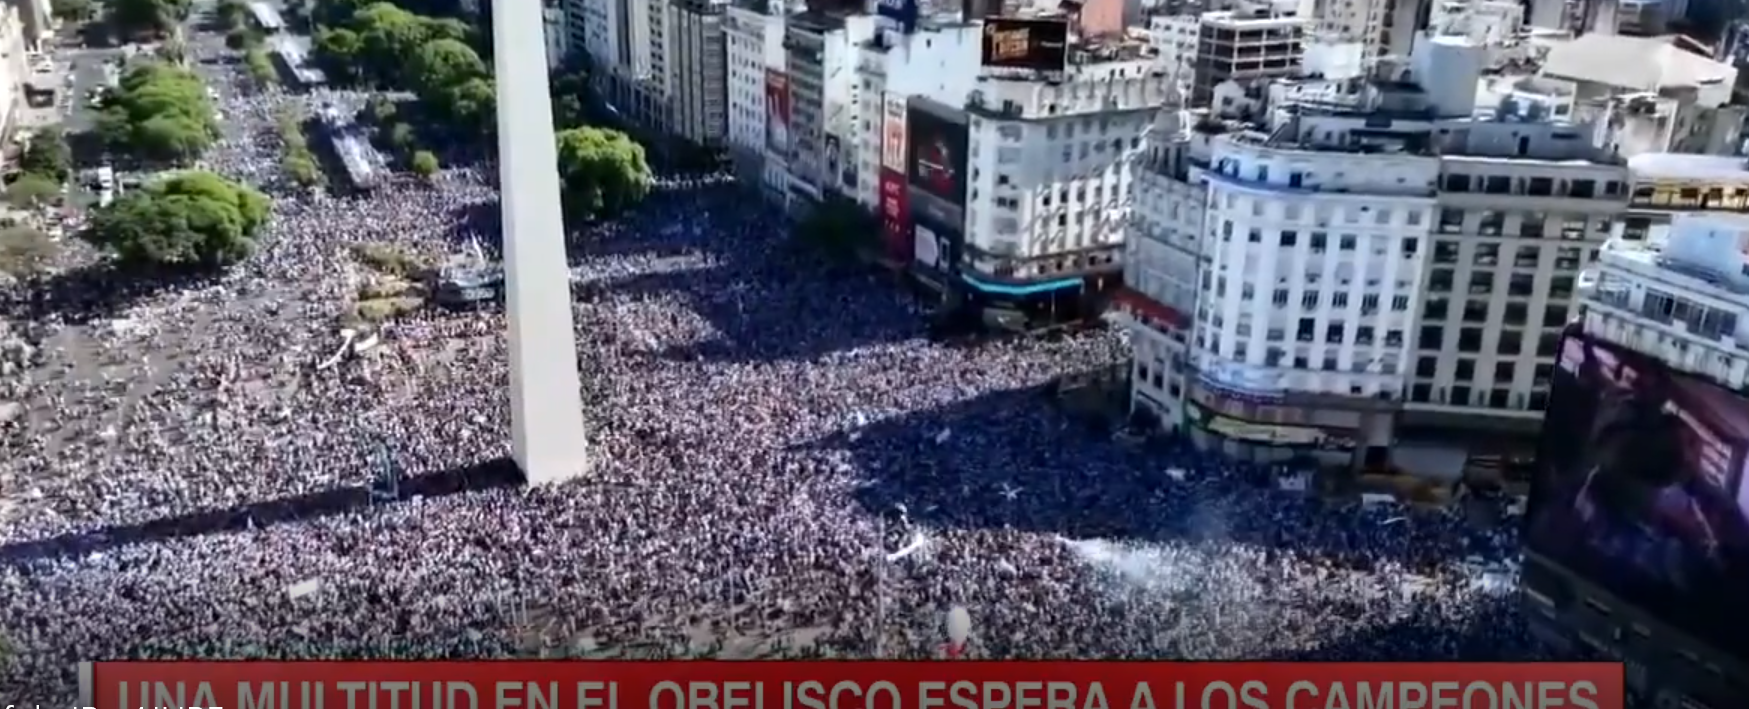 Es una barbaridad: miren cómo está Buenos Aires esperando a los campeones